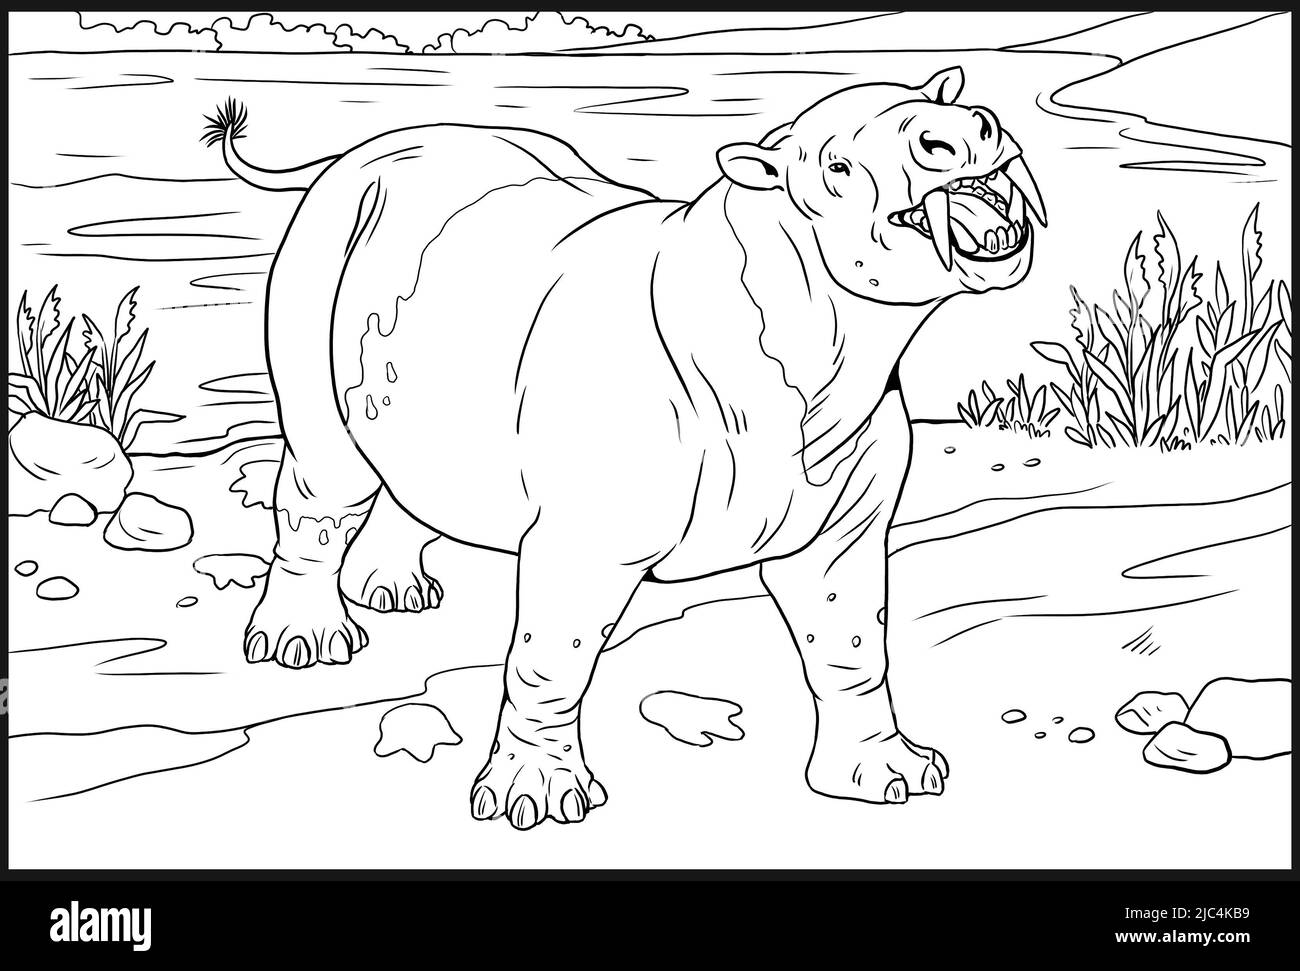 Prähistorische Tiere - Coryphodon. Zeichnung mit ausgestorbenen Tieren. Vorlage für das Ausmalen. Stockfoto